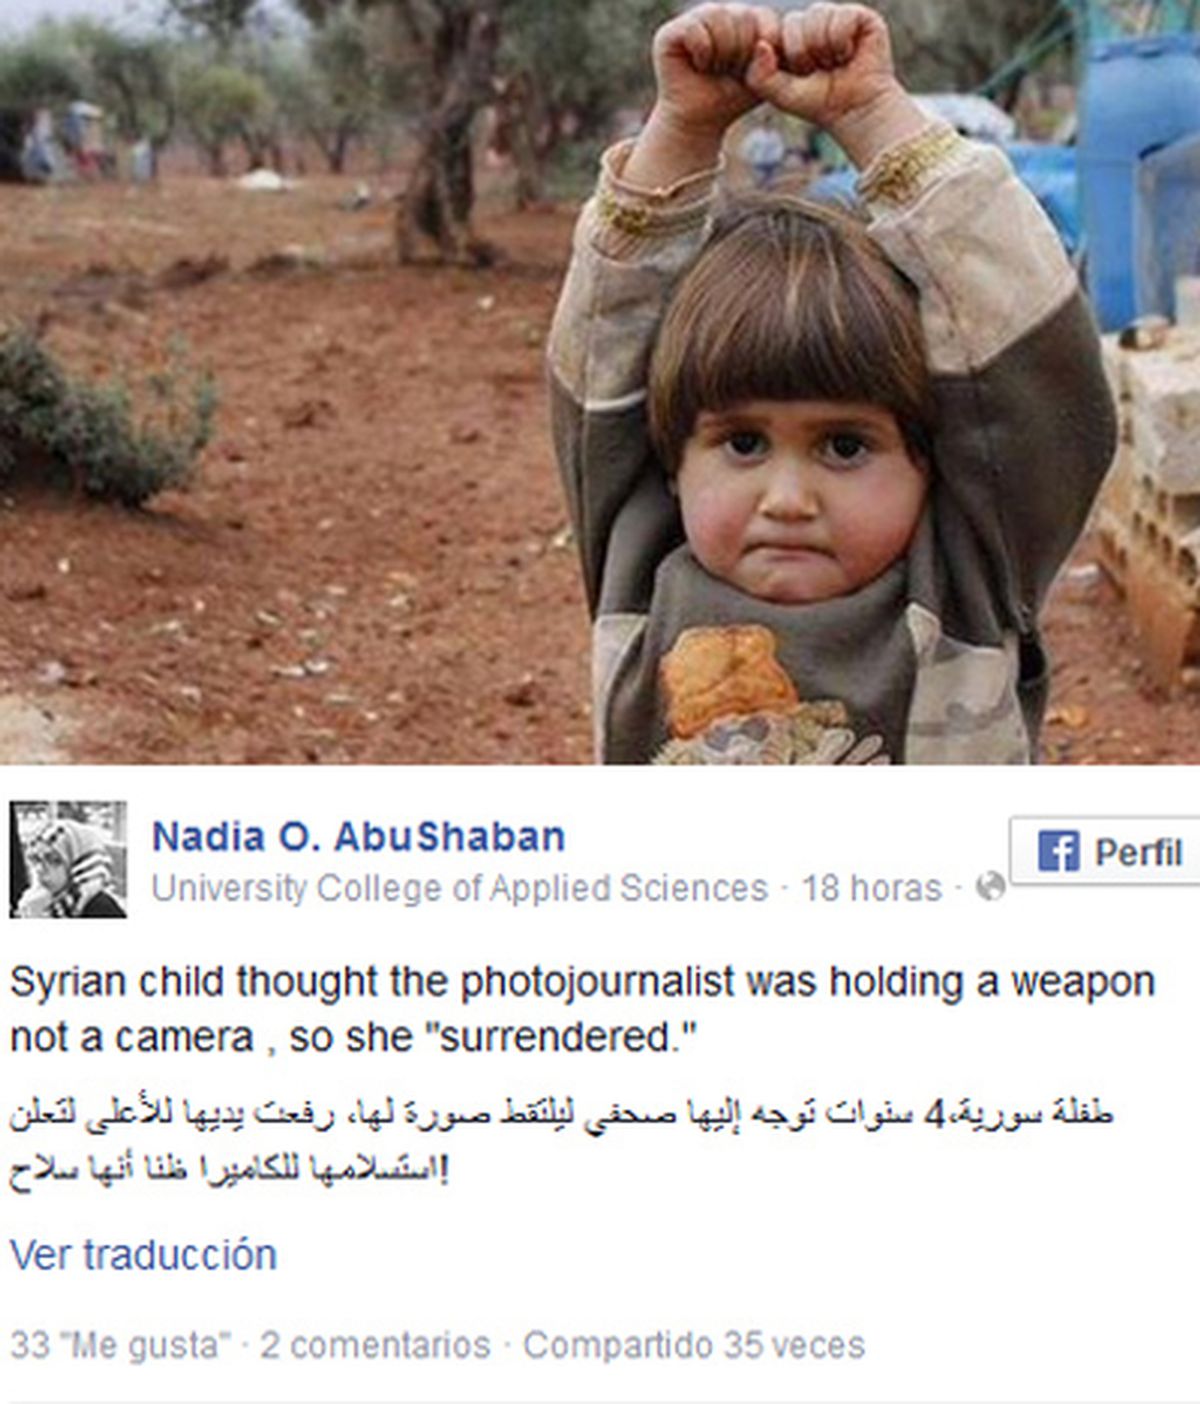 La rendición de una niña siria que pensó que la cámara era un arma